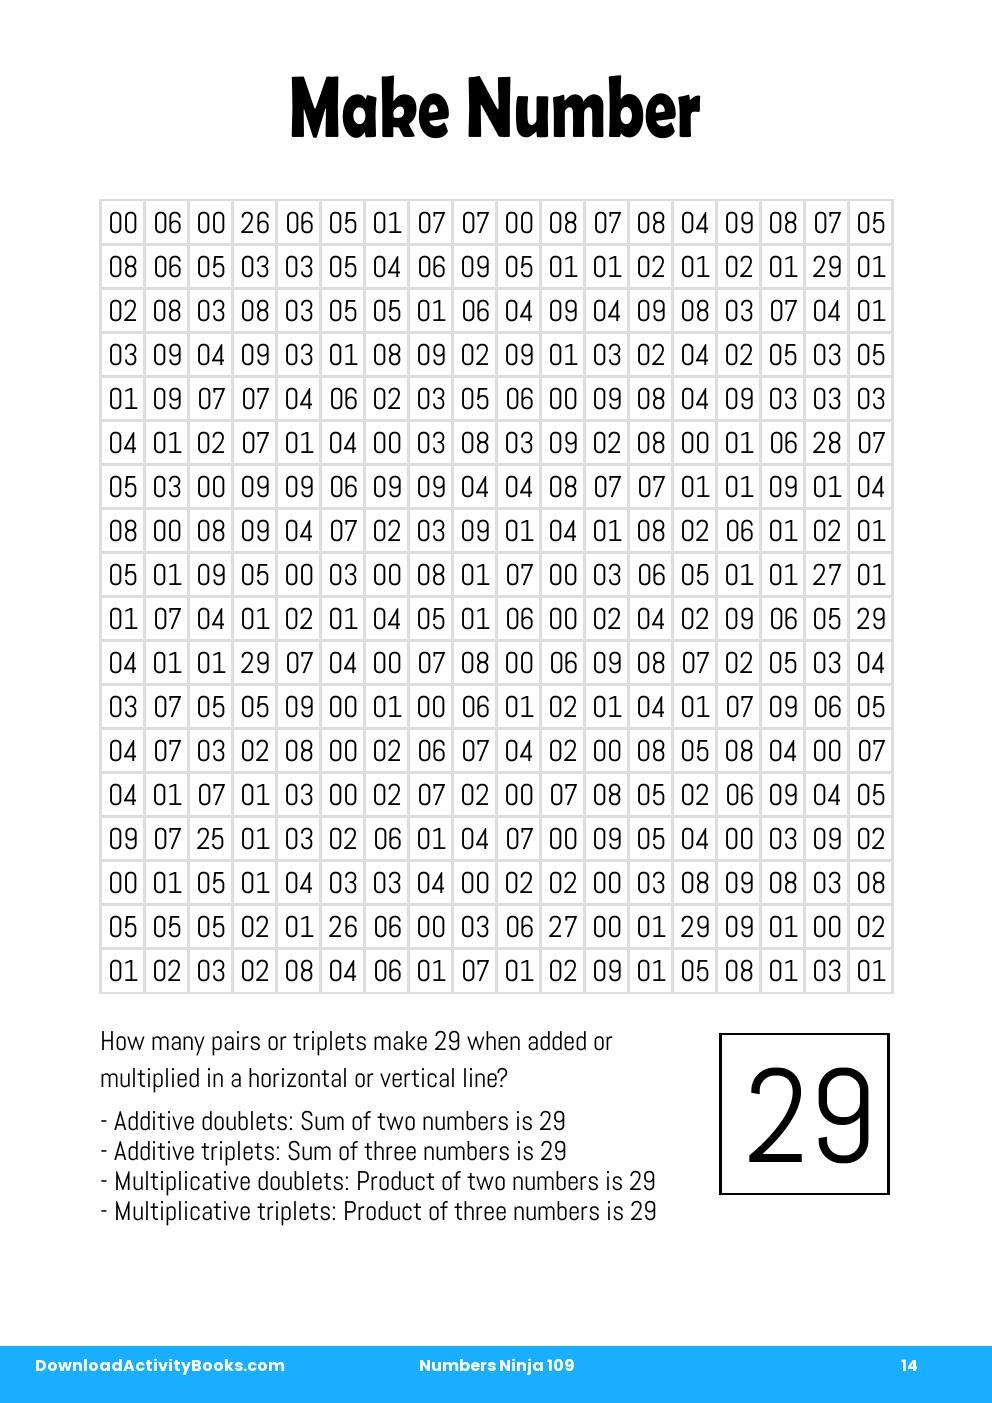 Make Number in Numbers Ninja 109